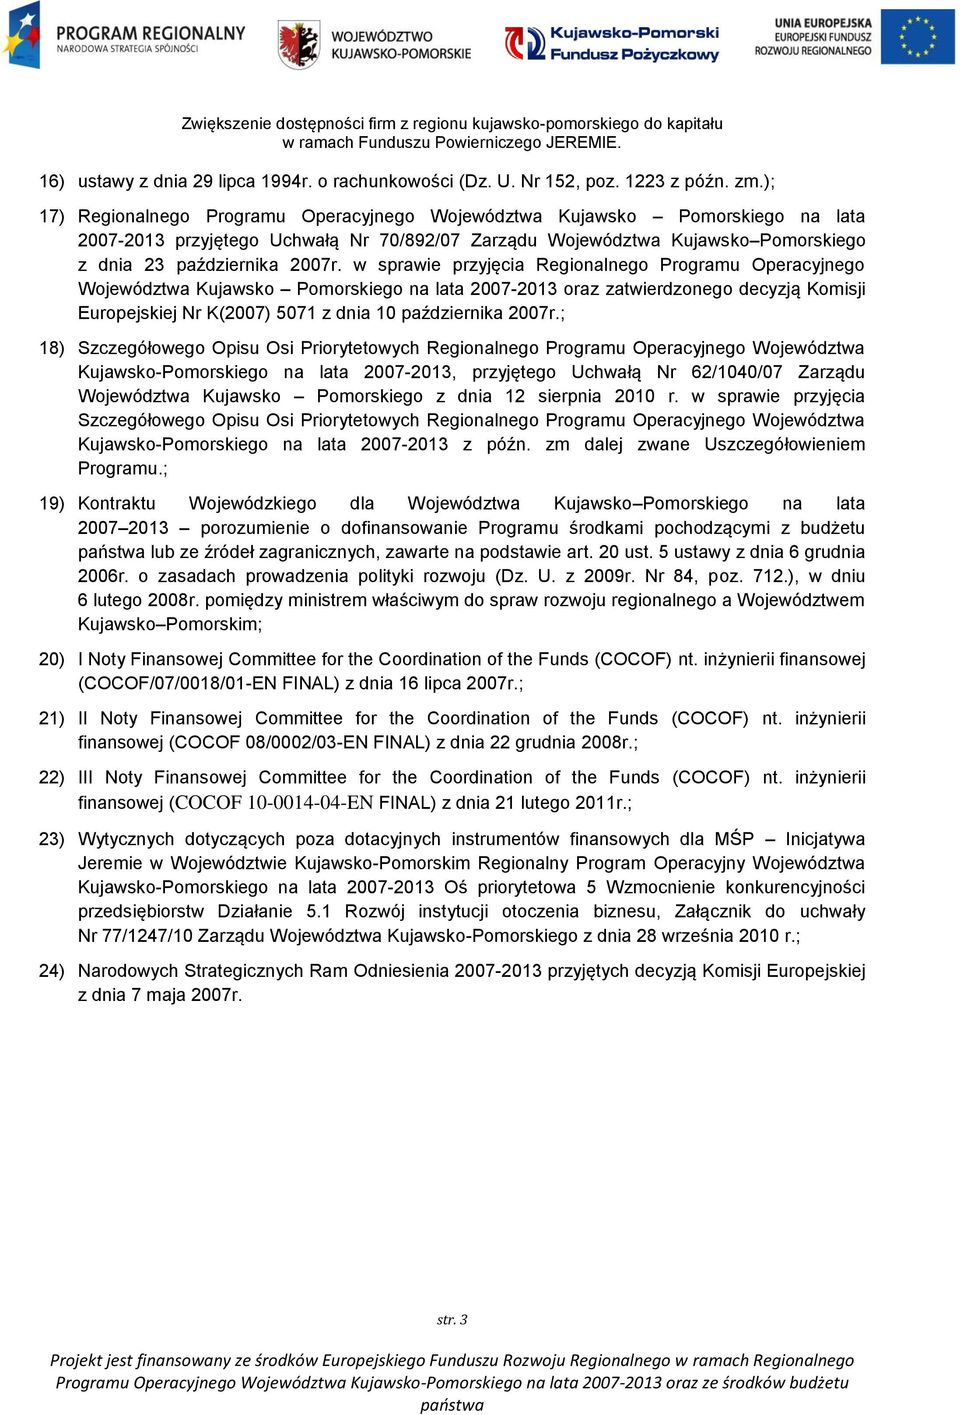 w sprawie przyjęcia Regionalnego Programu Operacyjnego Województwa Kujawsko Pomorskiego na lata 2007-2013 oraz zatwierdzonego decyzją Komisji Europejskiej Nr K(2007) 5071 z dnia 10 października 2007r.